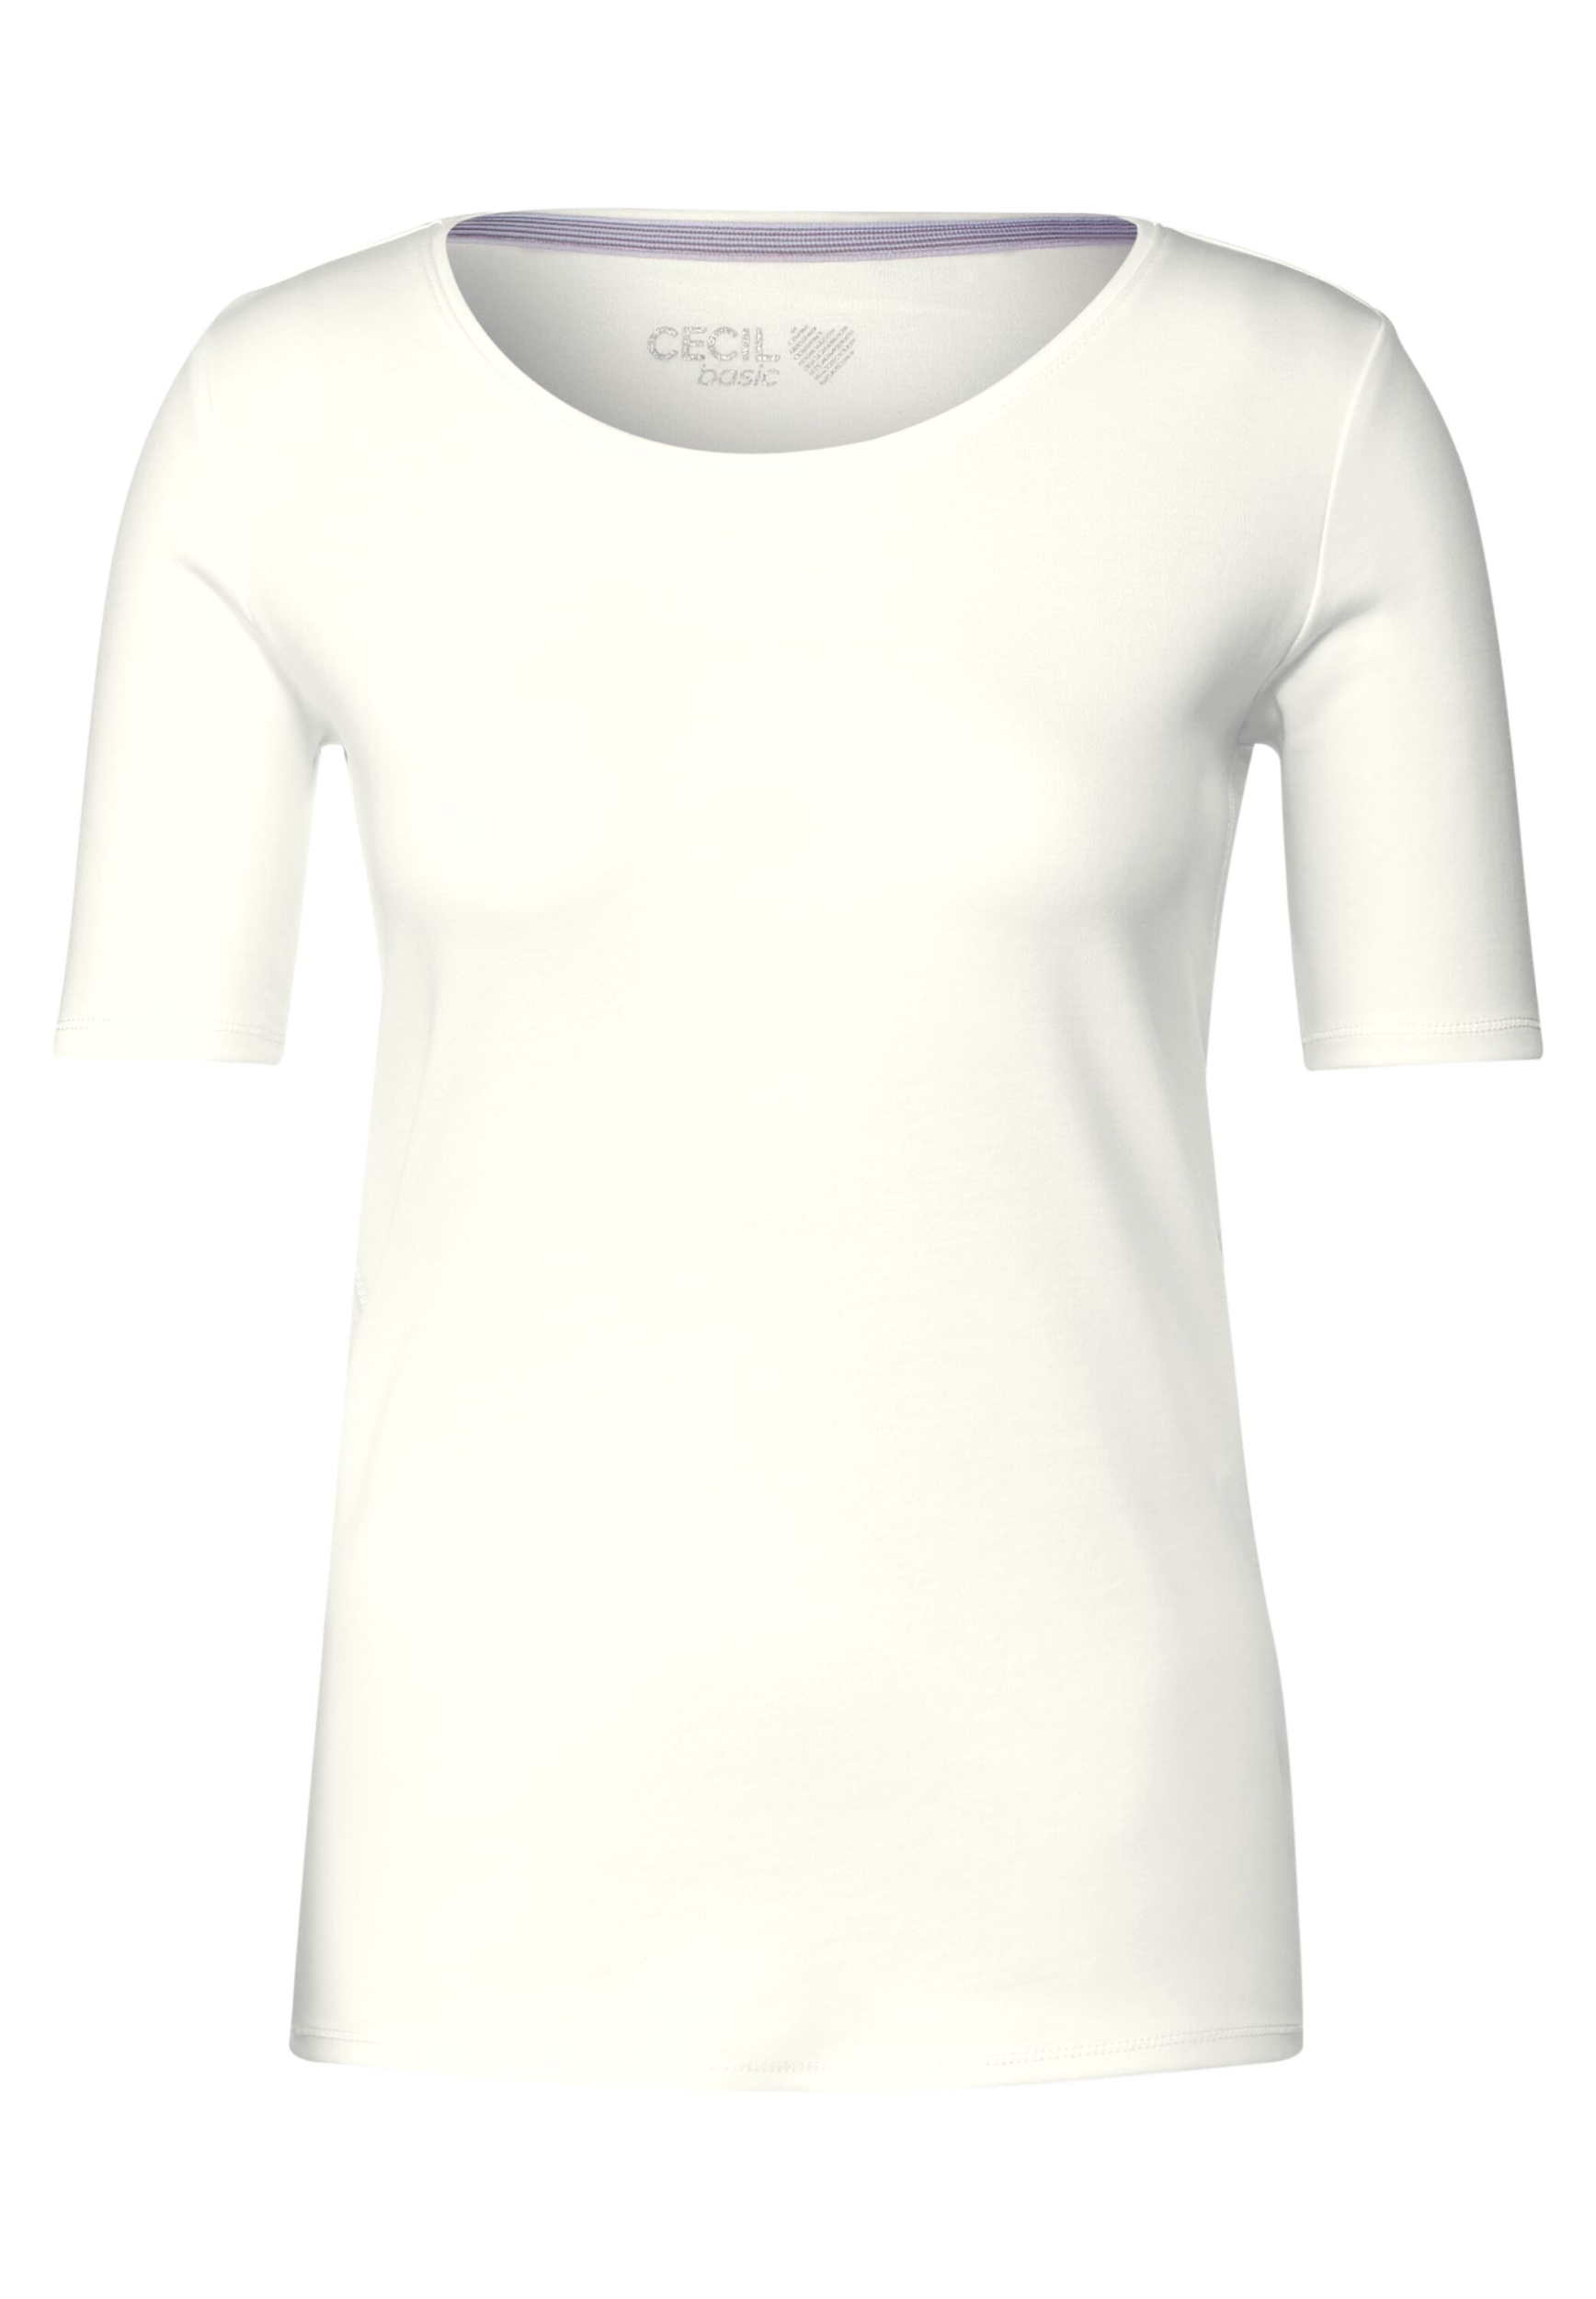 | B317515-13474-XL XL | Style NOS | Lena vanilla white